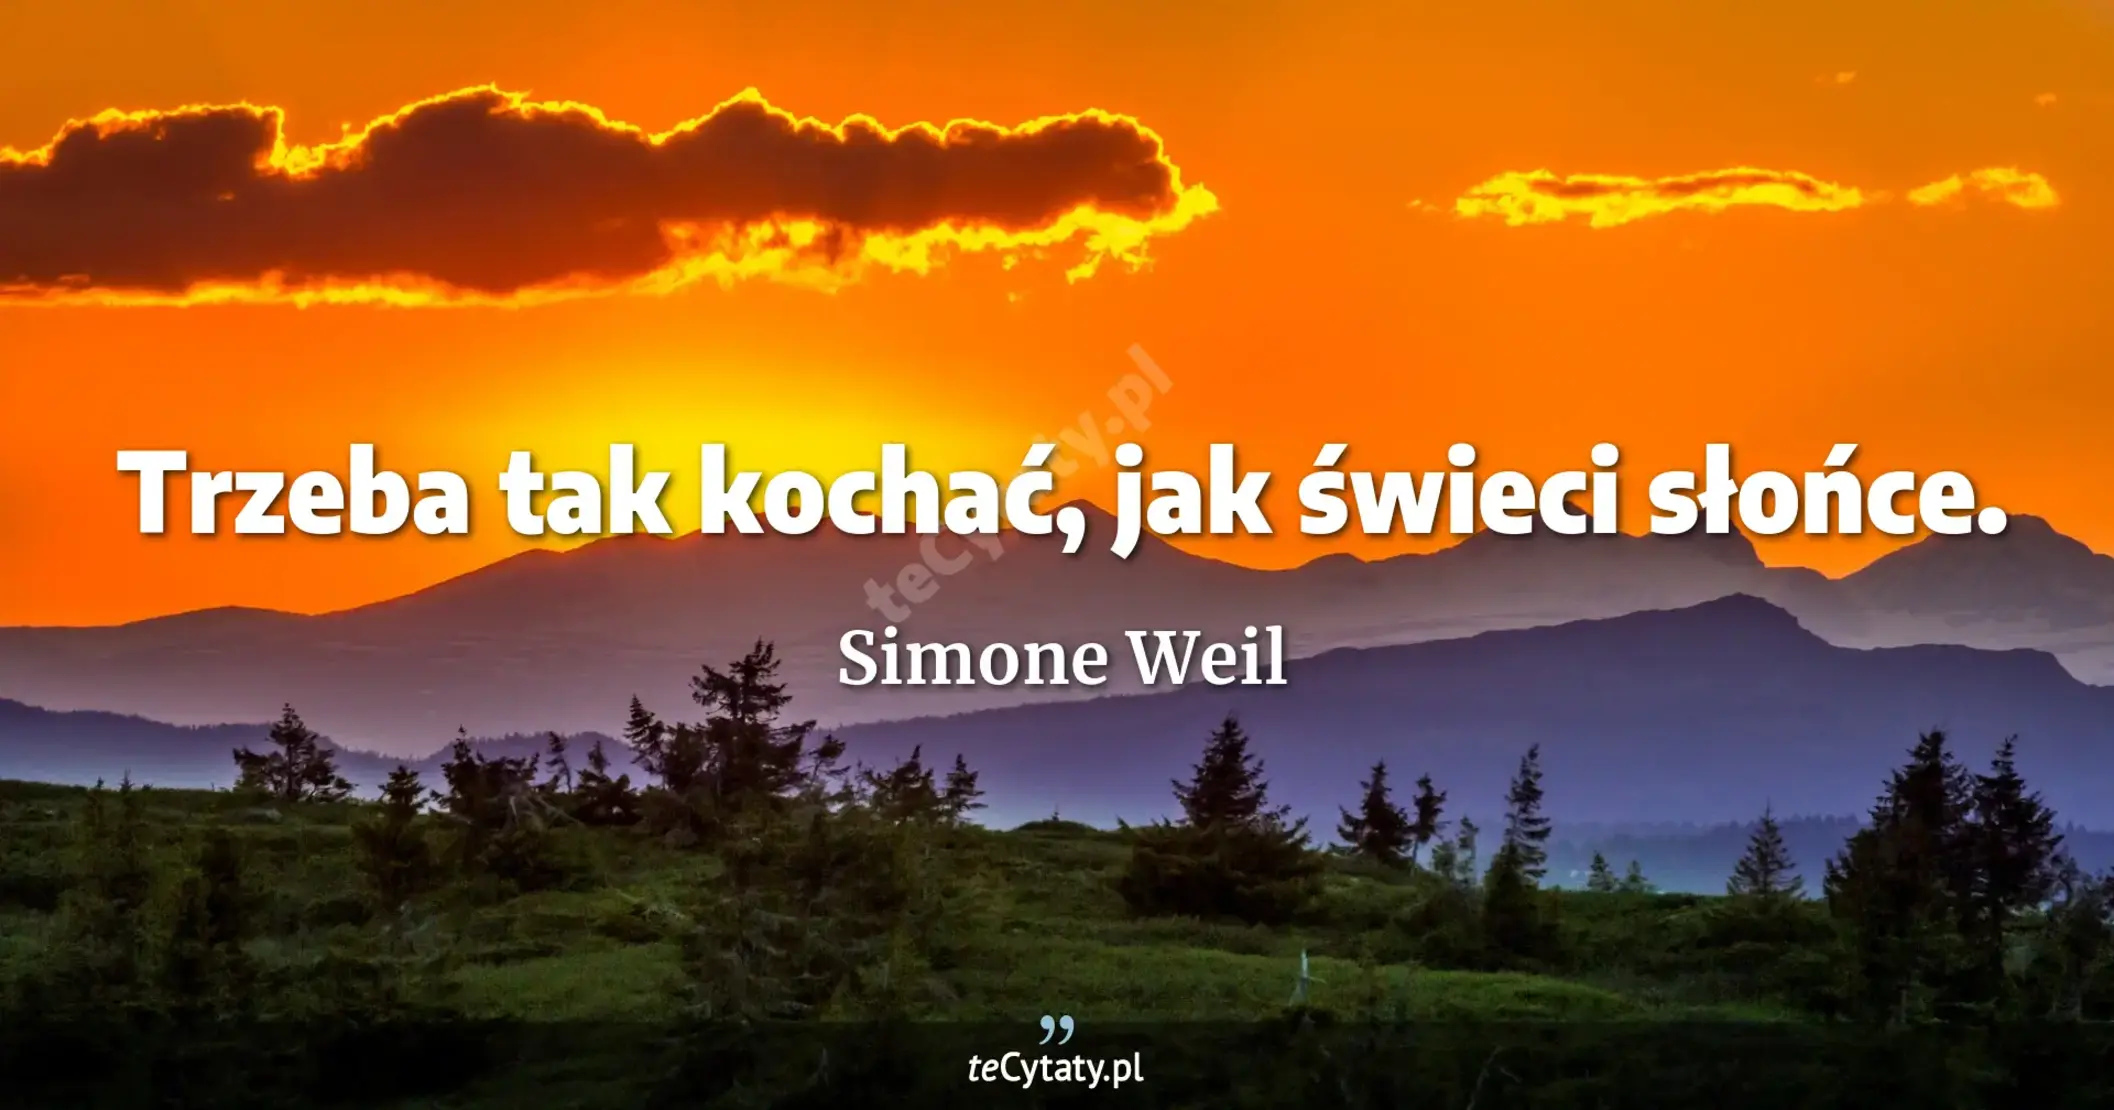 Trzeba tak kochać, jak świeci słońce. - Simone Weil